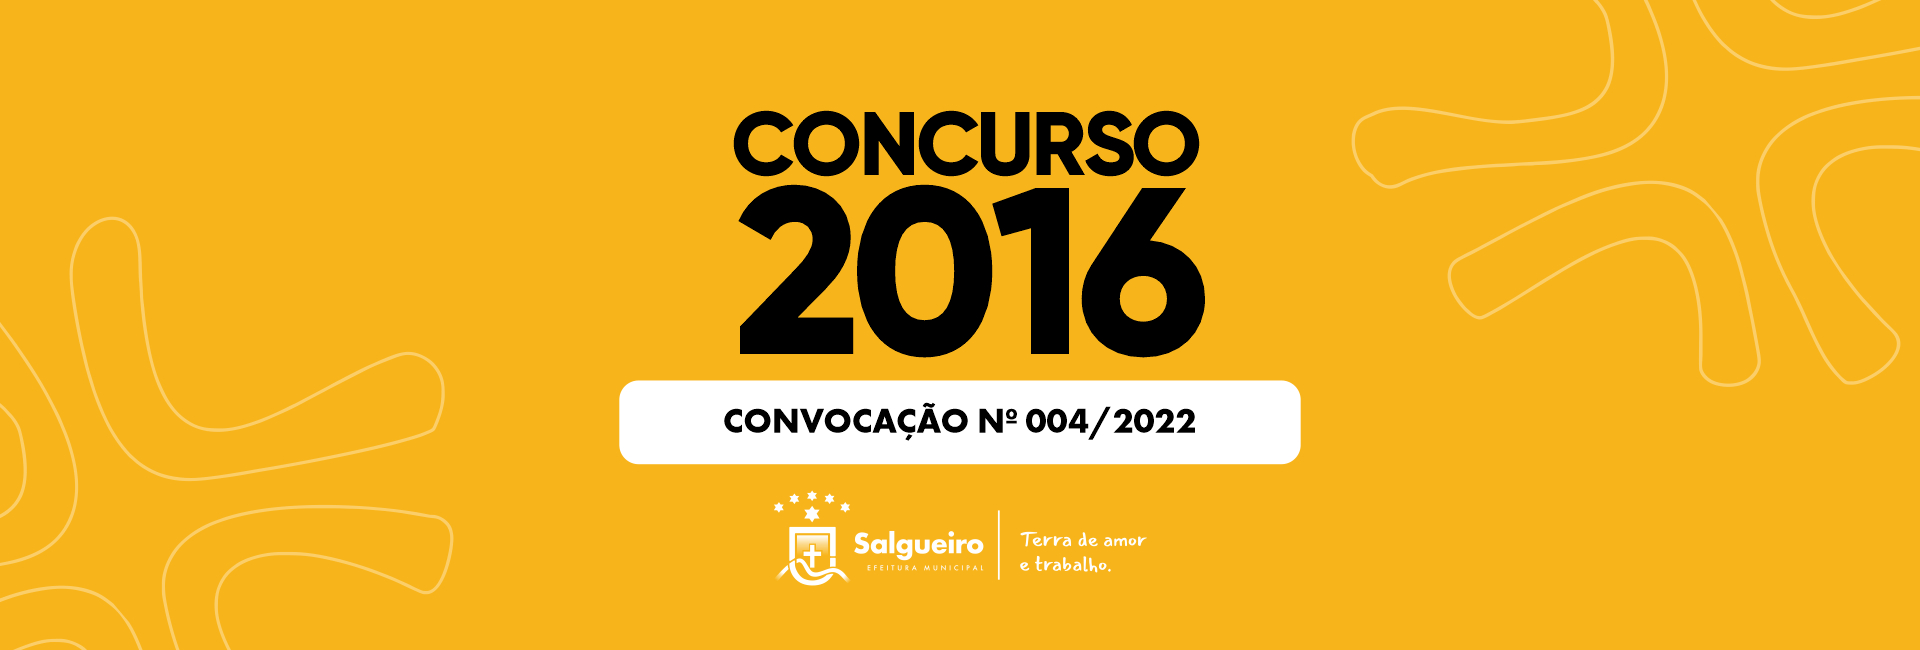 Convocação 004 - COncurso 2016.